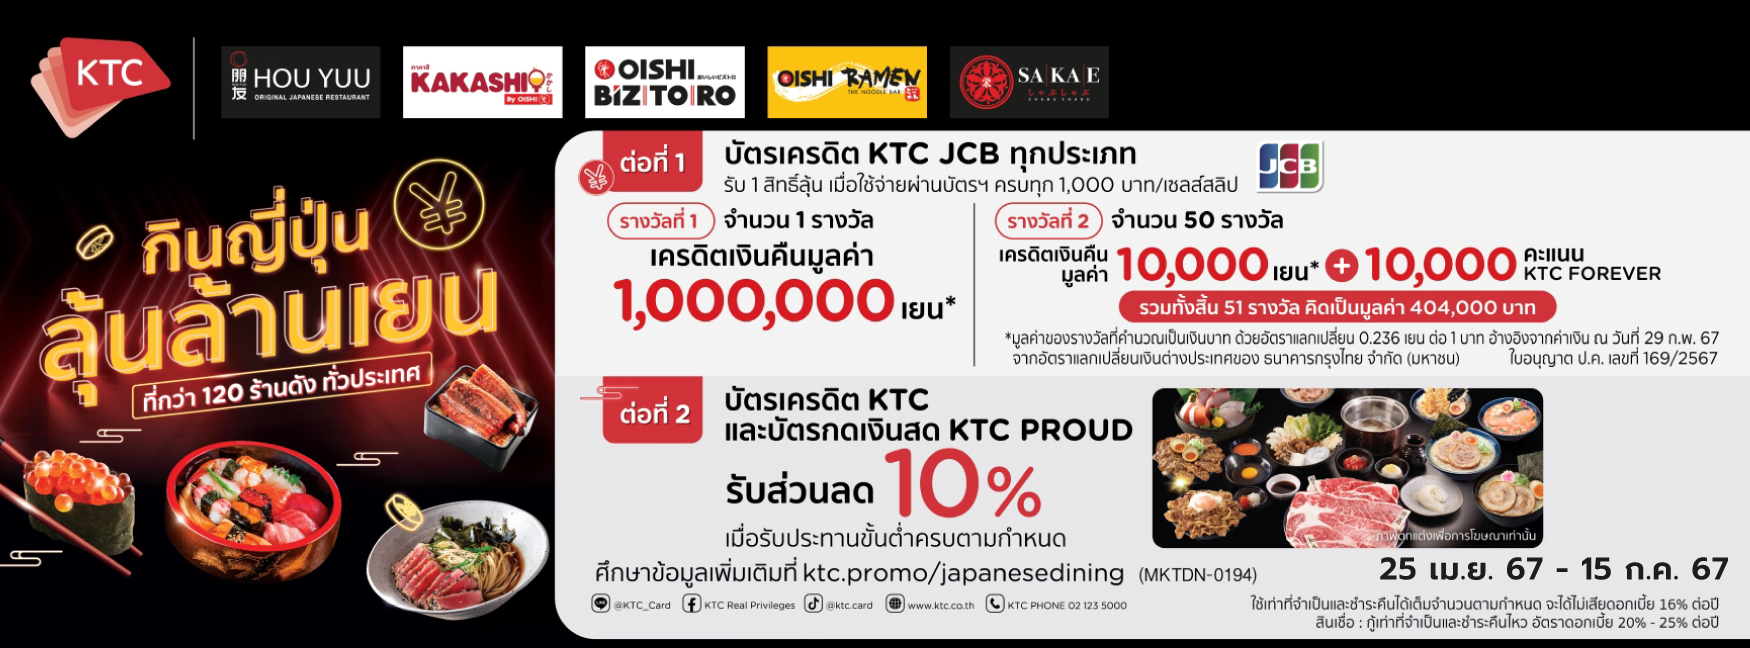 กินญี่ปุ่นลุ้นล้านเยน กับบัตรเครดิต KTC JCB